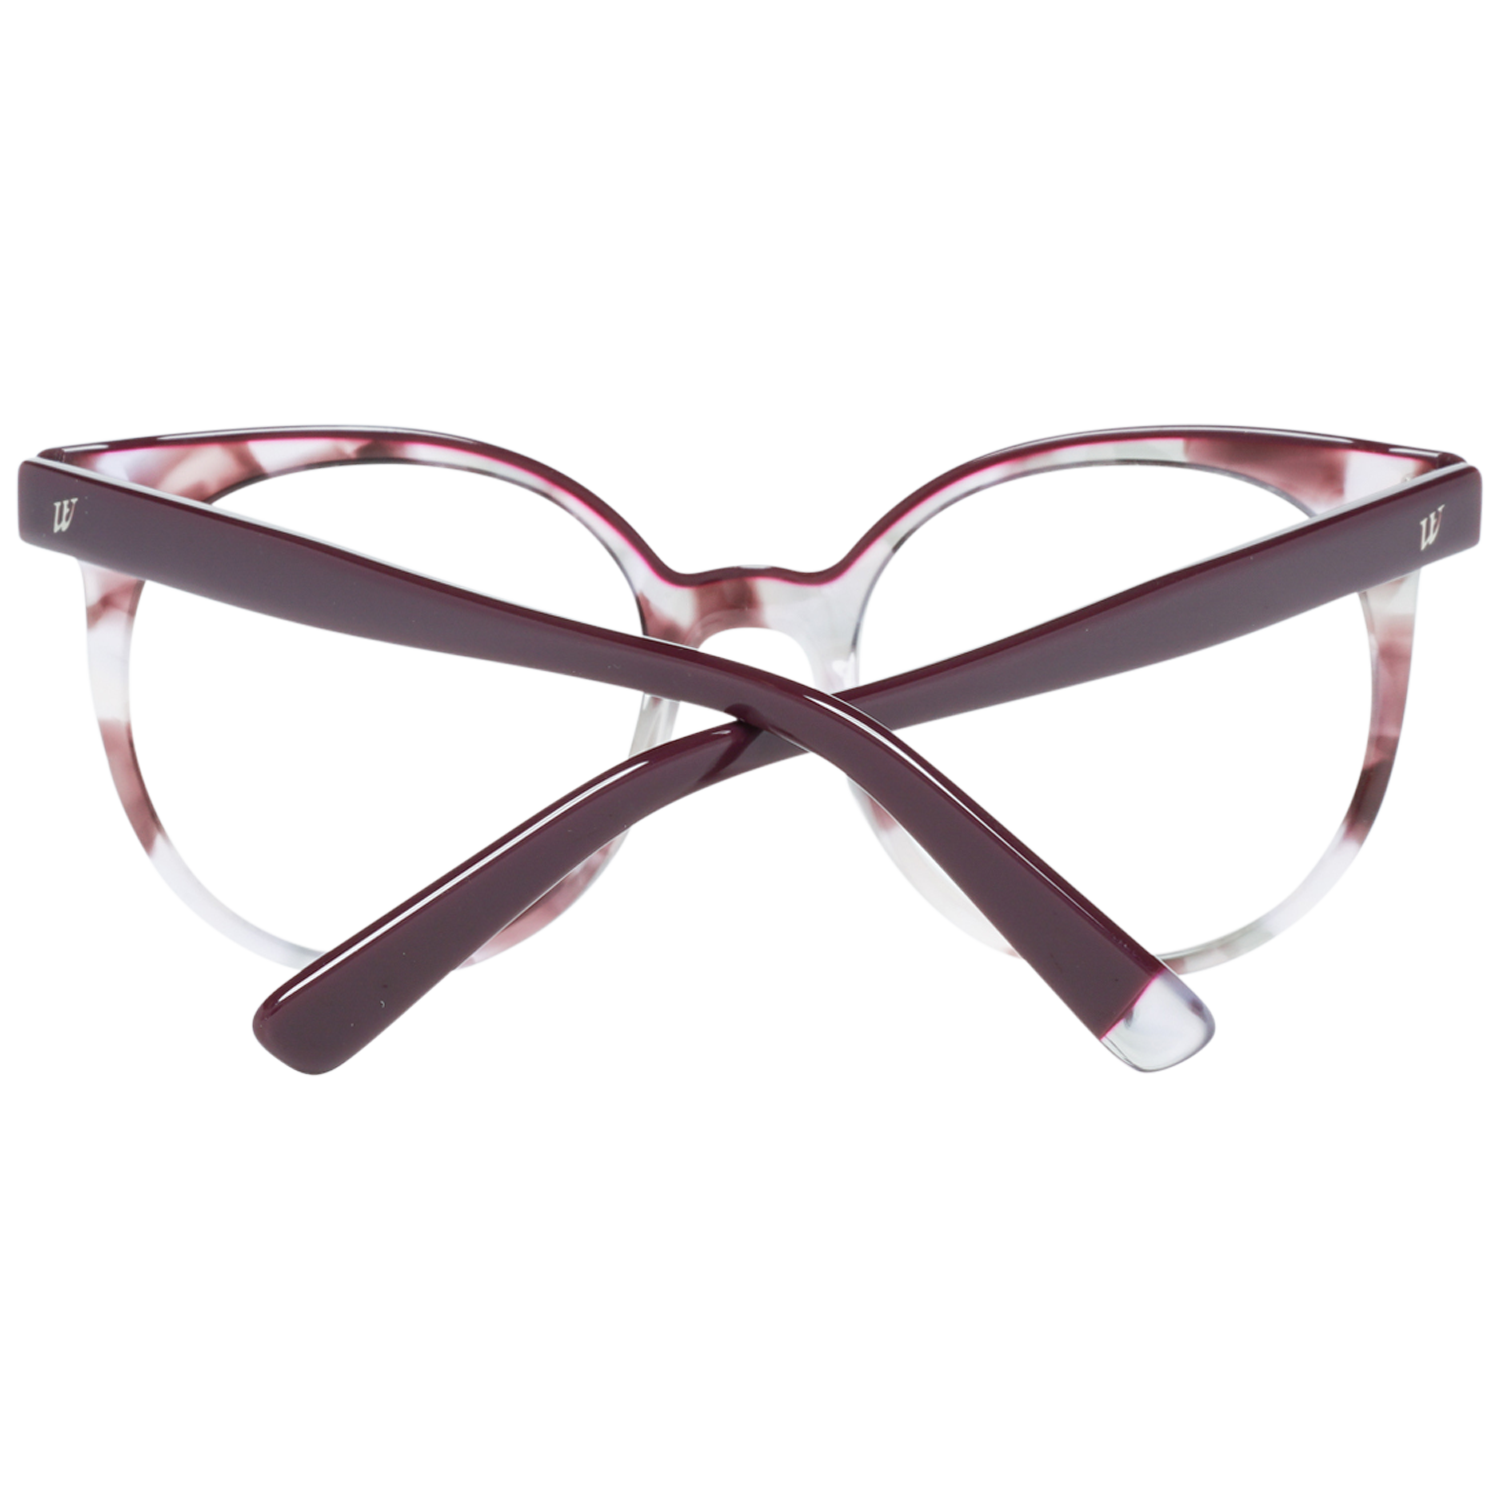 Web Frames Web Glasses Optical Frame WE5227 074 49 Eyeglasses Eyewear UK USA Australia 